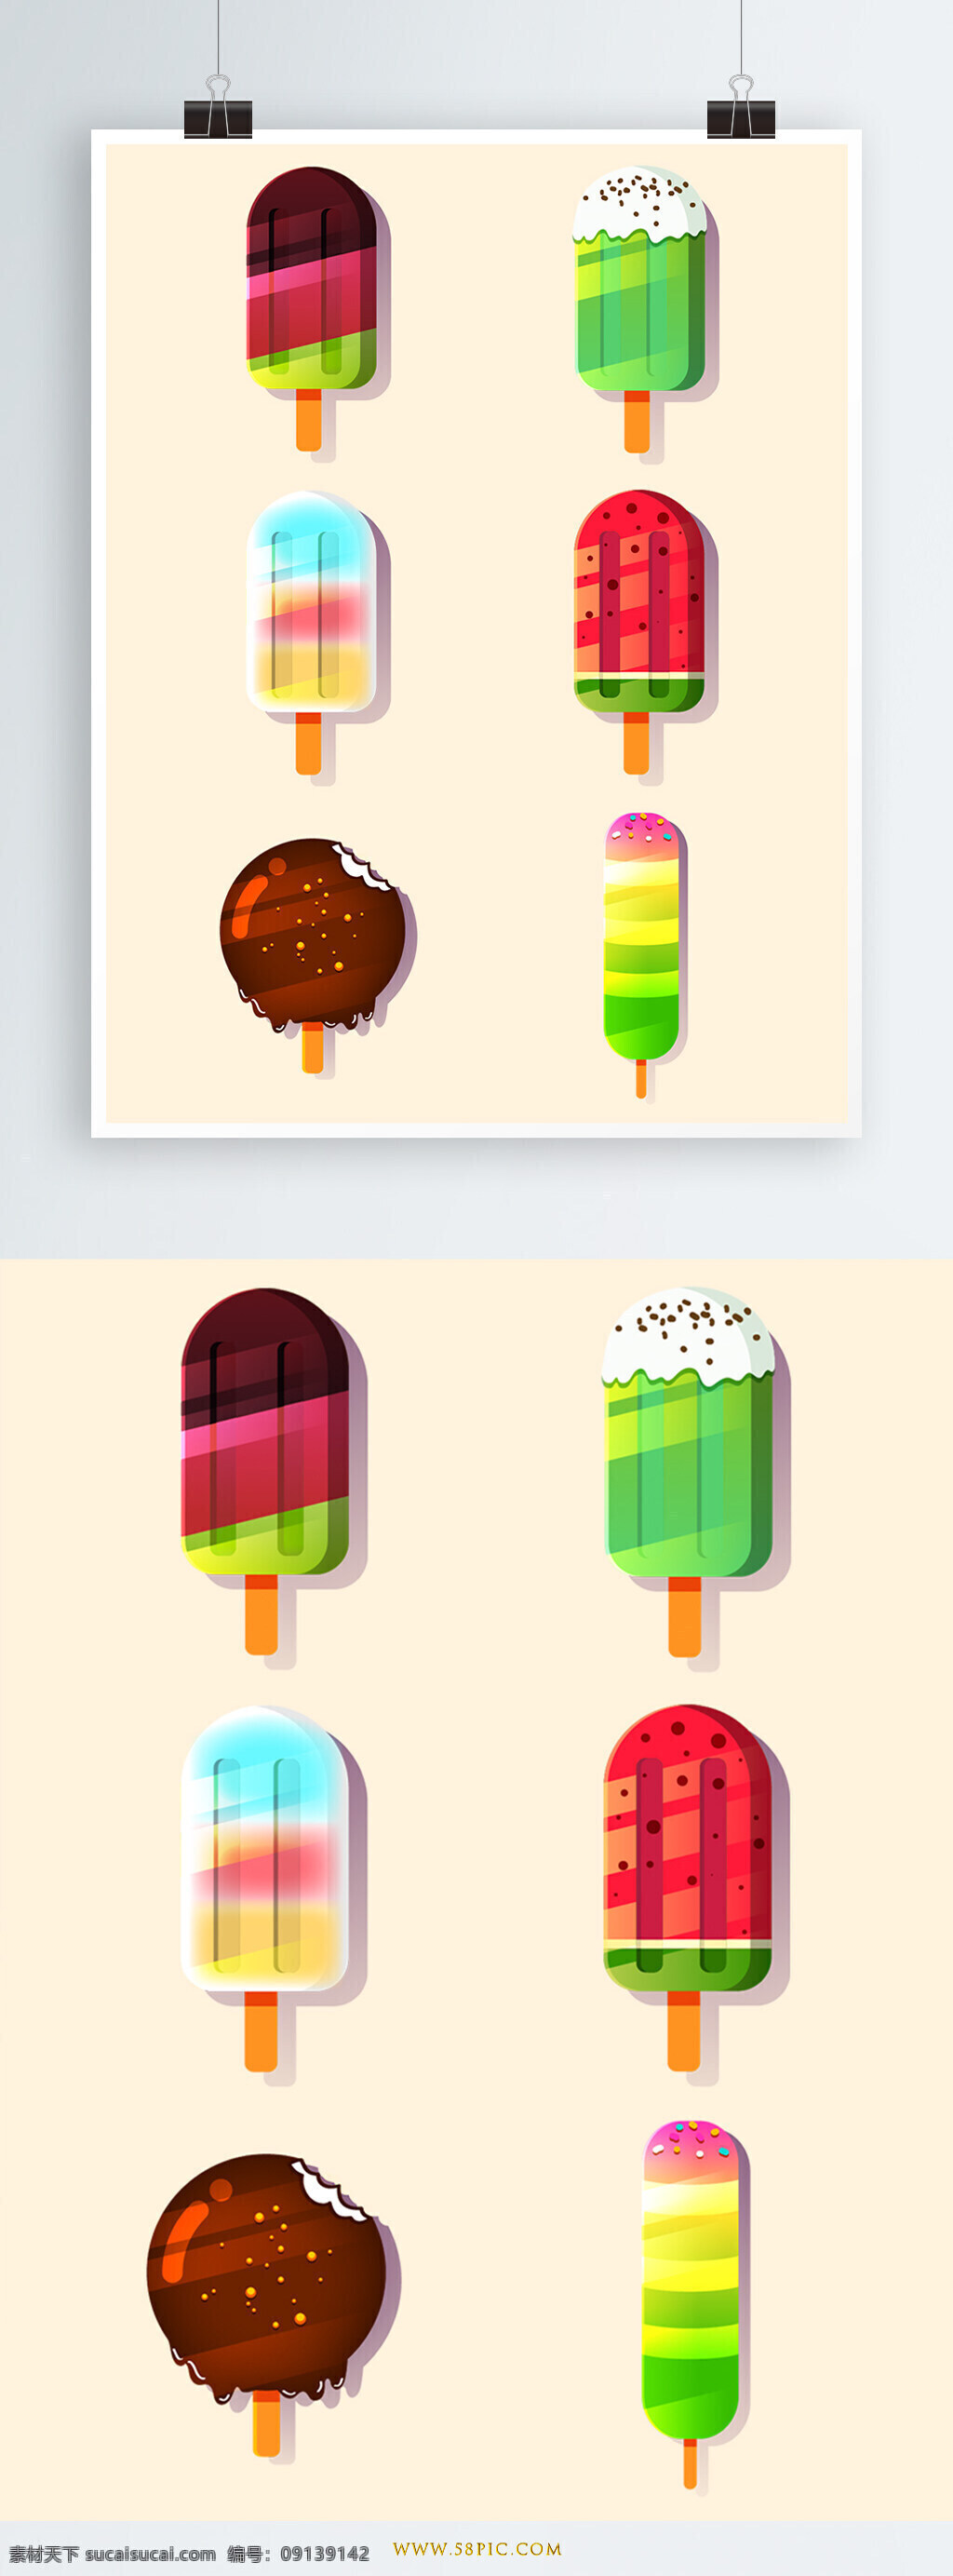 夏天 棒冰 矢量 元素 食物 冰淇淋 夏季 美食 冰棒 雪糕 冰棍